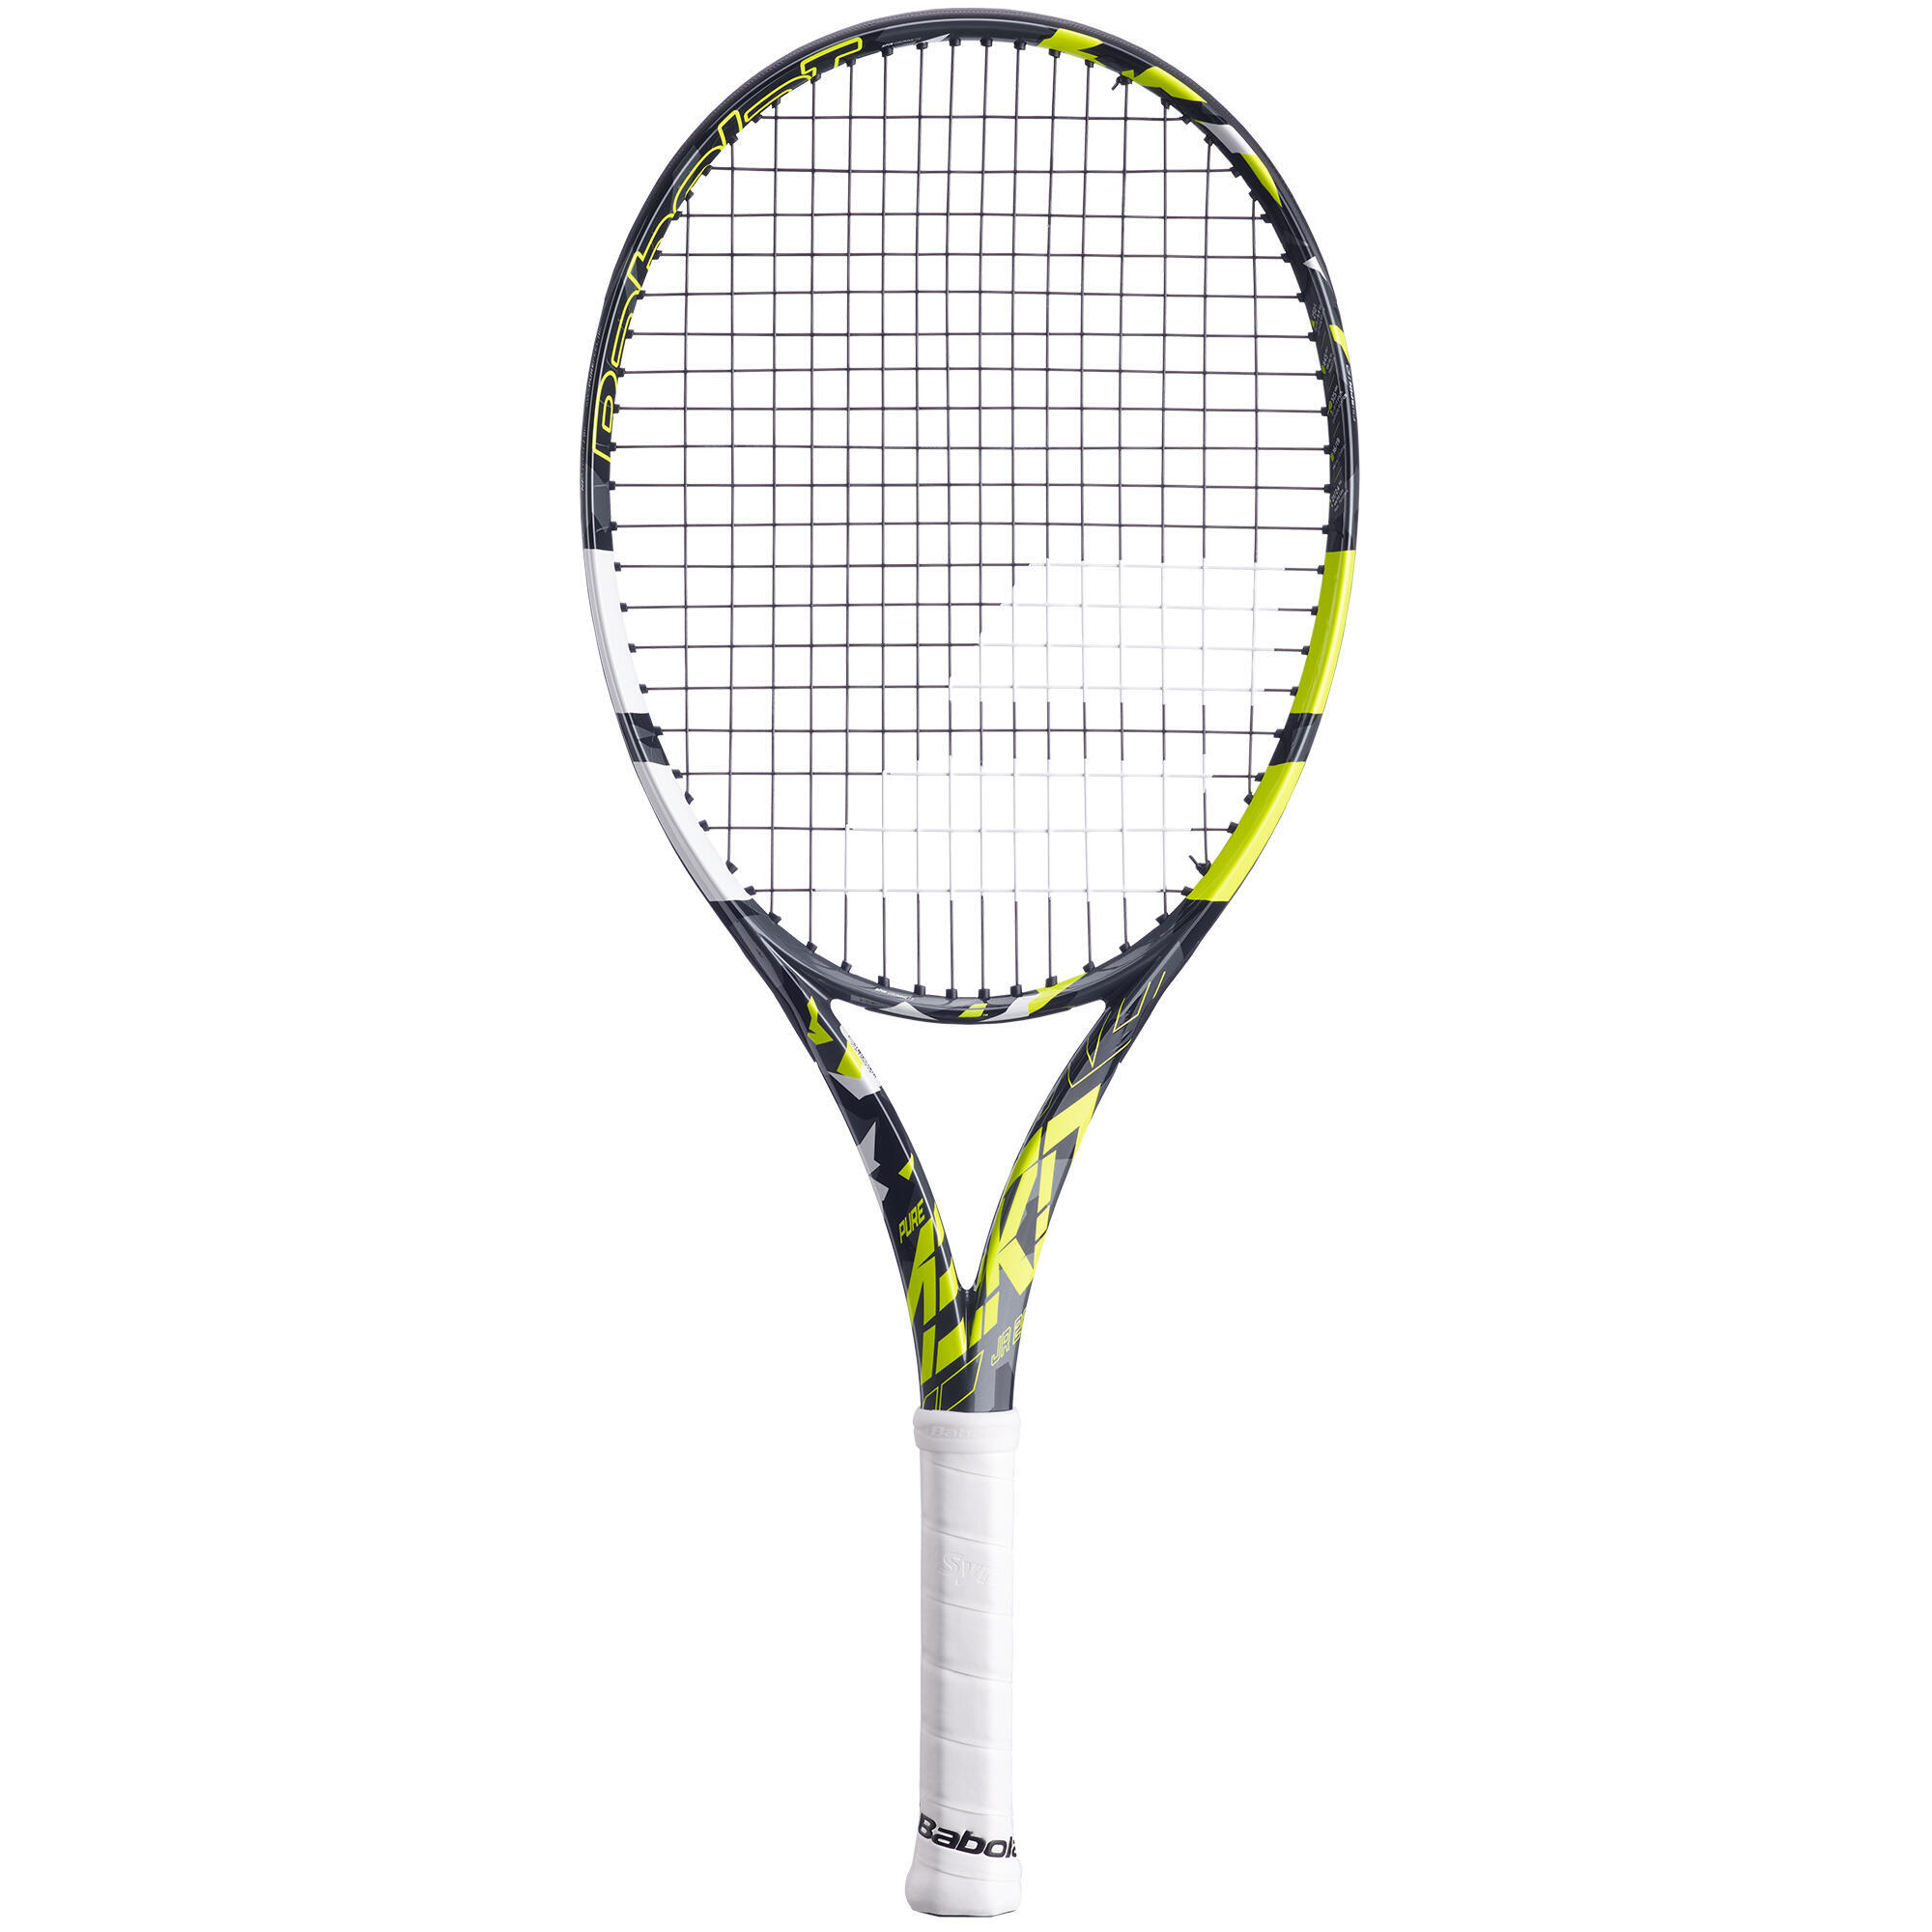 Детская теннисная ракетка Pure Aero 26 дюймов, черная/желтая BABOLAT ракетка для большого тенниса детская babolat aero junior 26 желтый